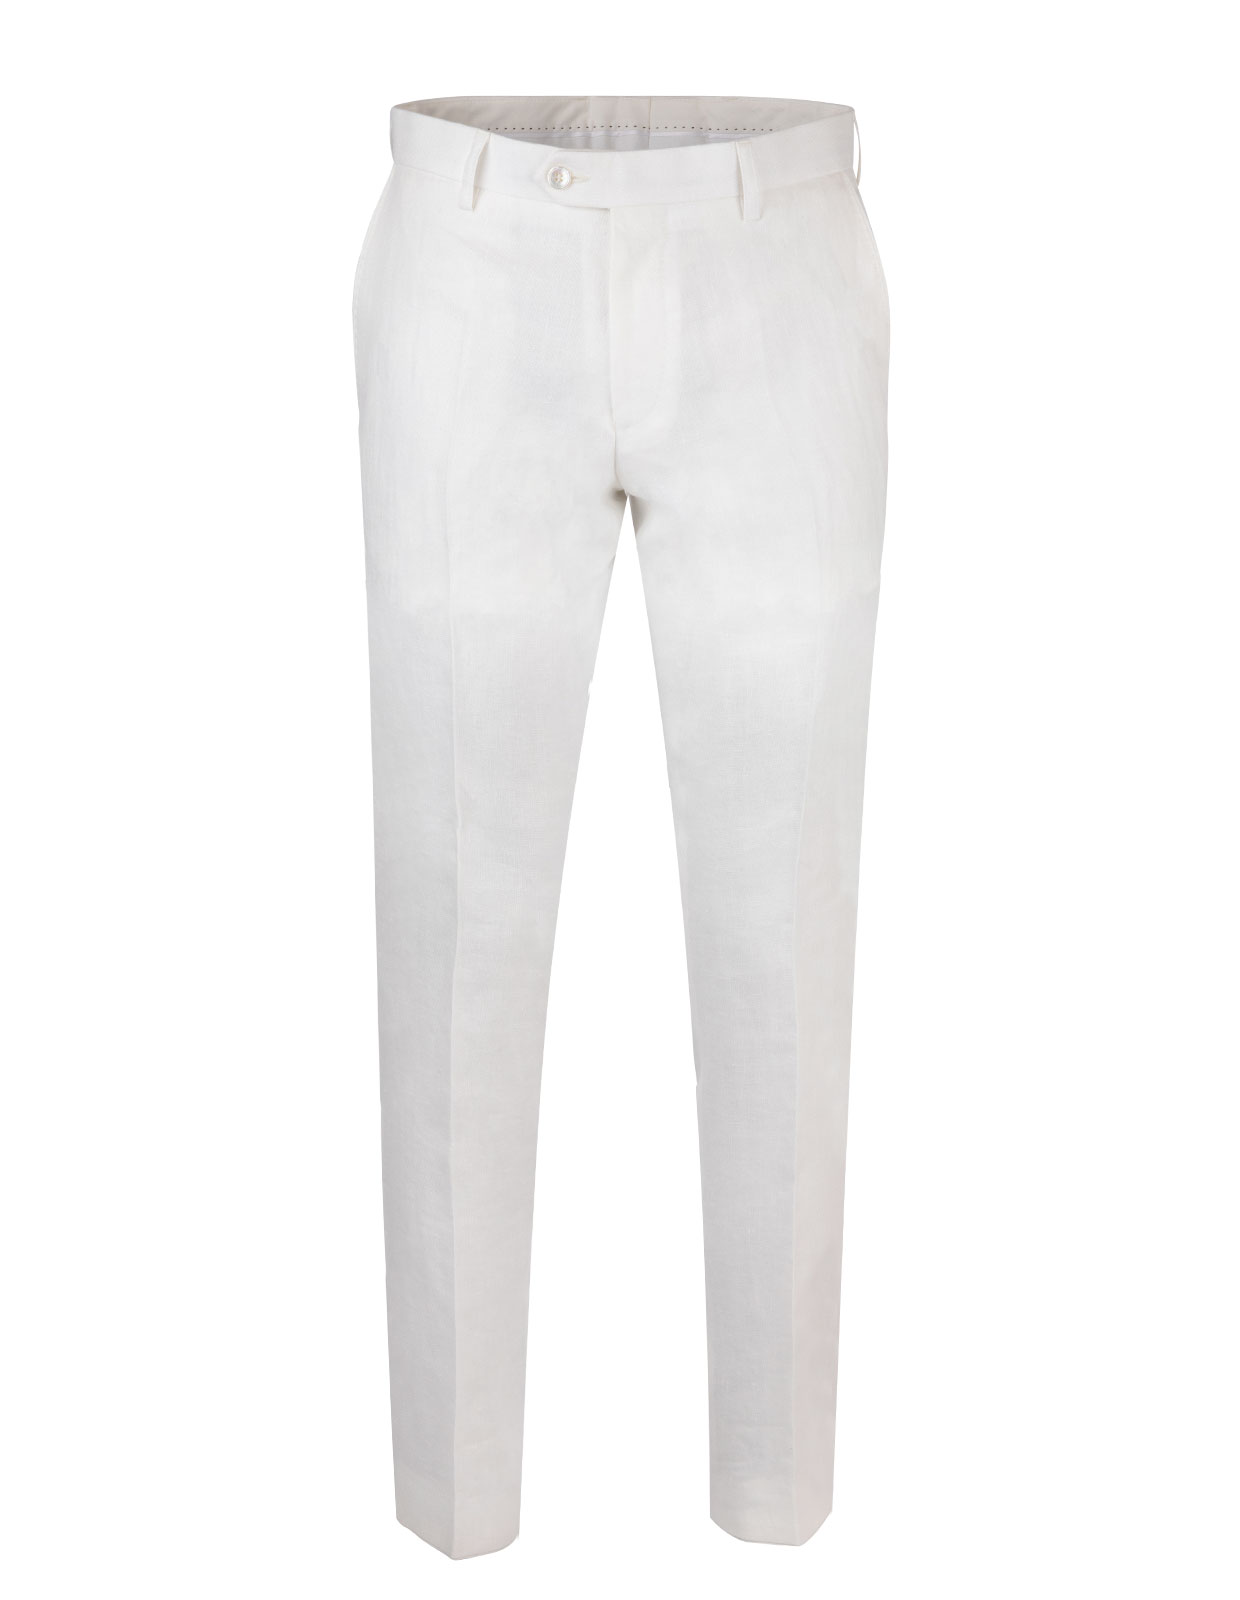 Diego Regular Linen Trouser White Stl 46